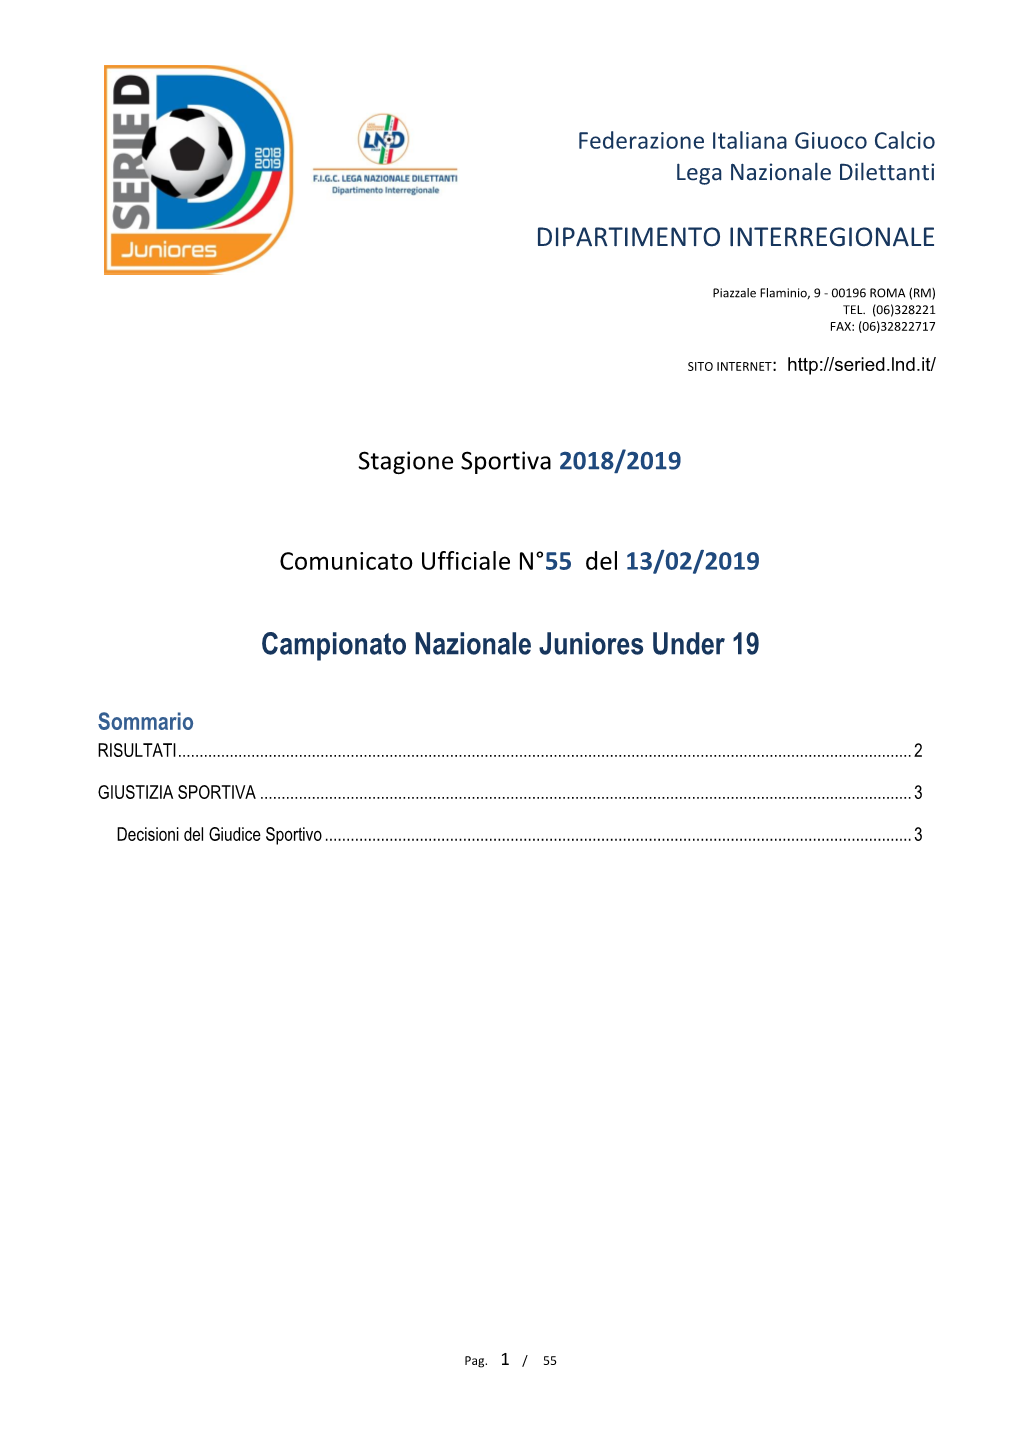 Giudice Sportivo Gare Del Campionato Nazionale Juniores Gare Del 9/ 2/2019